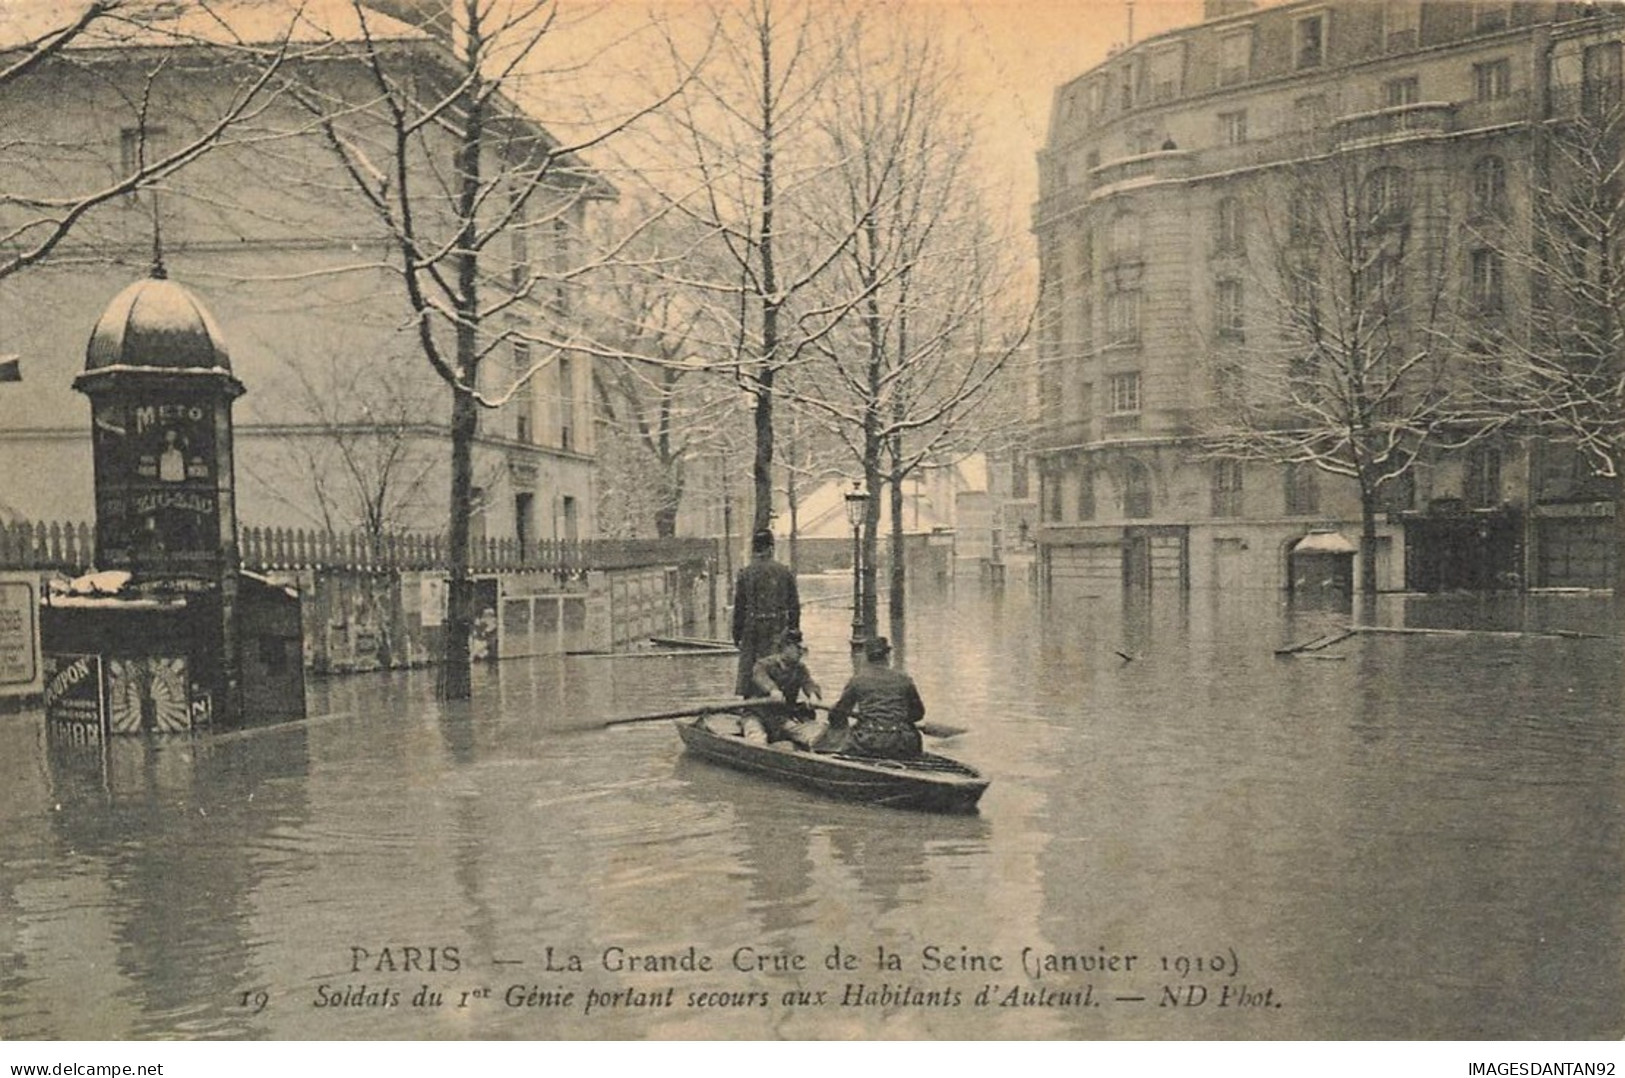 75 PARIS 16 #22933 INONDATIONS CRUE DE LA SEINE 1910 AUTEUIL SOLDATS SU 1ER GENIE PORTANT SECOURS CANOT BARQUE - Inondations De 1910